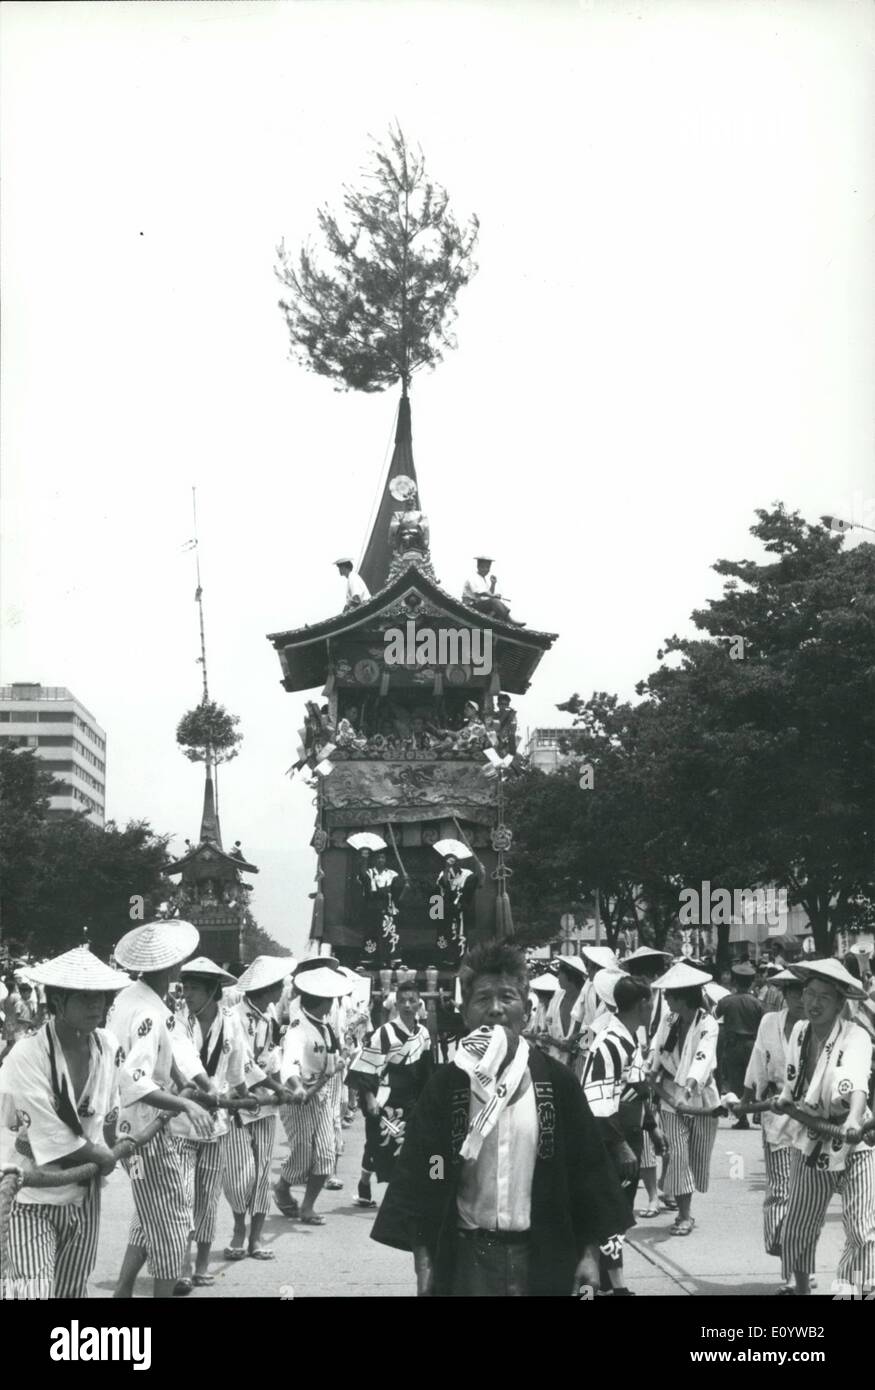 Juillet 07, 1971 - 10e siècle festival de Kyoto. Le giion Matsuir célèbre, l'un des grands festivals d'été de Kyoto, l'ancienne capitale du Japon, date du 10ième siècle en l'honneur de l'yasakea culte, des groupes d'hommes carminées à roues examen les rues de la ville, transportant un orchestre danseurs du ventilateur. Le poids des sanctuaires environ 10 tonnes, et certains sont de 24 mètres de haut. Aussi dans la procession festival haut en couleurs sont des jeunes filles dans de beaux kimonos processus festival sont des jeunes filles dans de beaux kimonos et coiffures qui sont cardie sur l'épaule d'assister à un grand sous des parasols en papier Banque D'Images